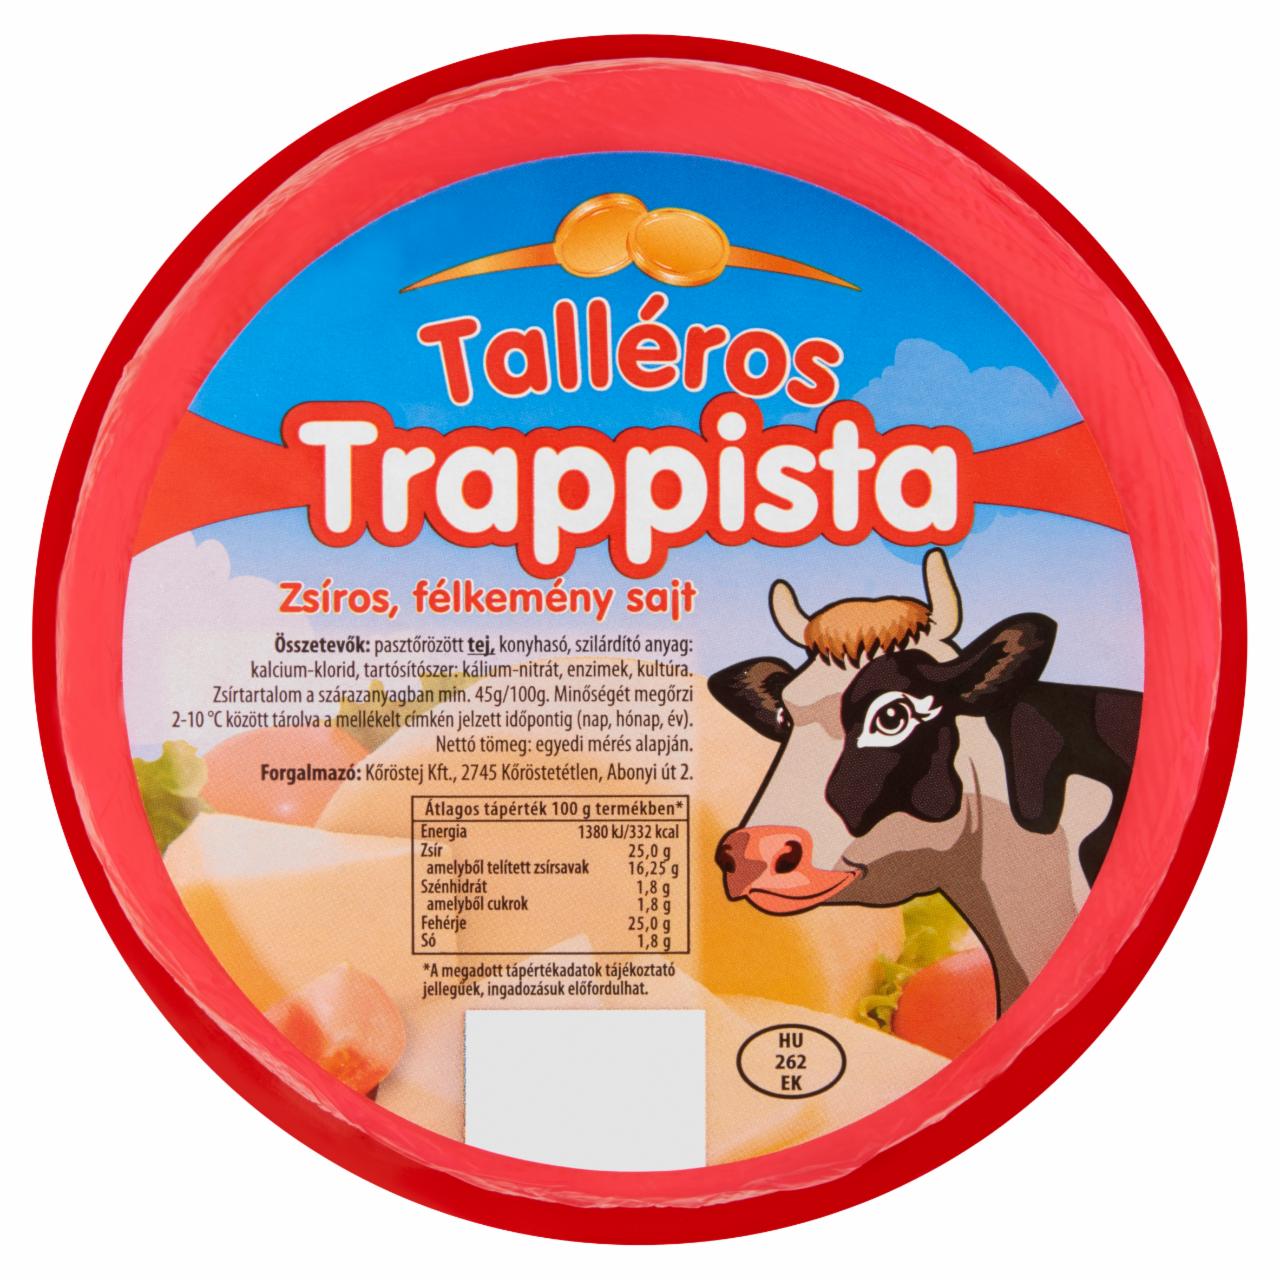 Képek - Talléros zsíros, félkemény trappista sajt